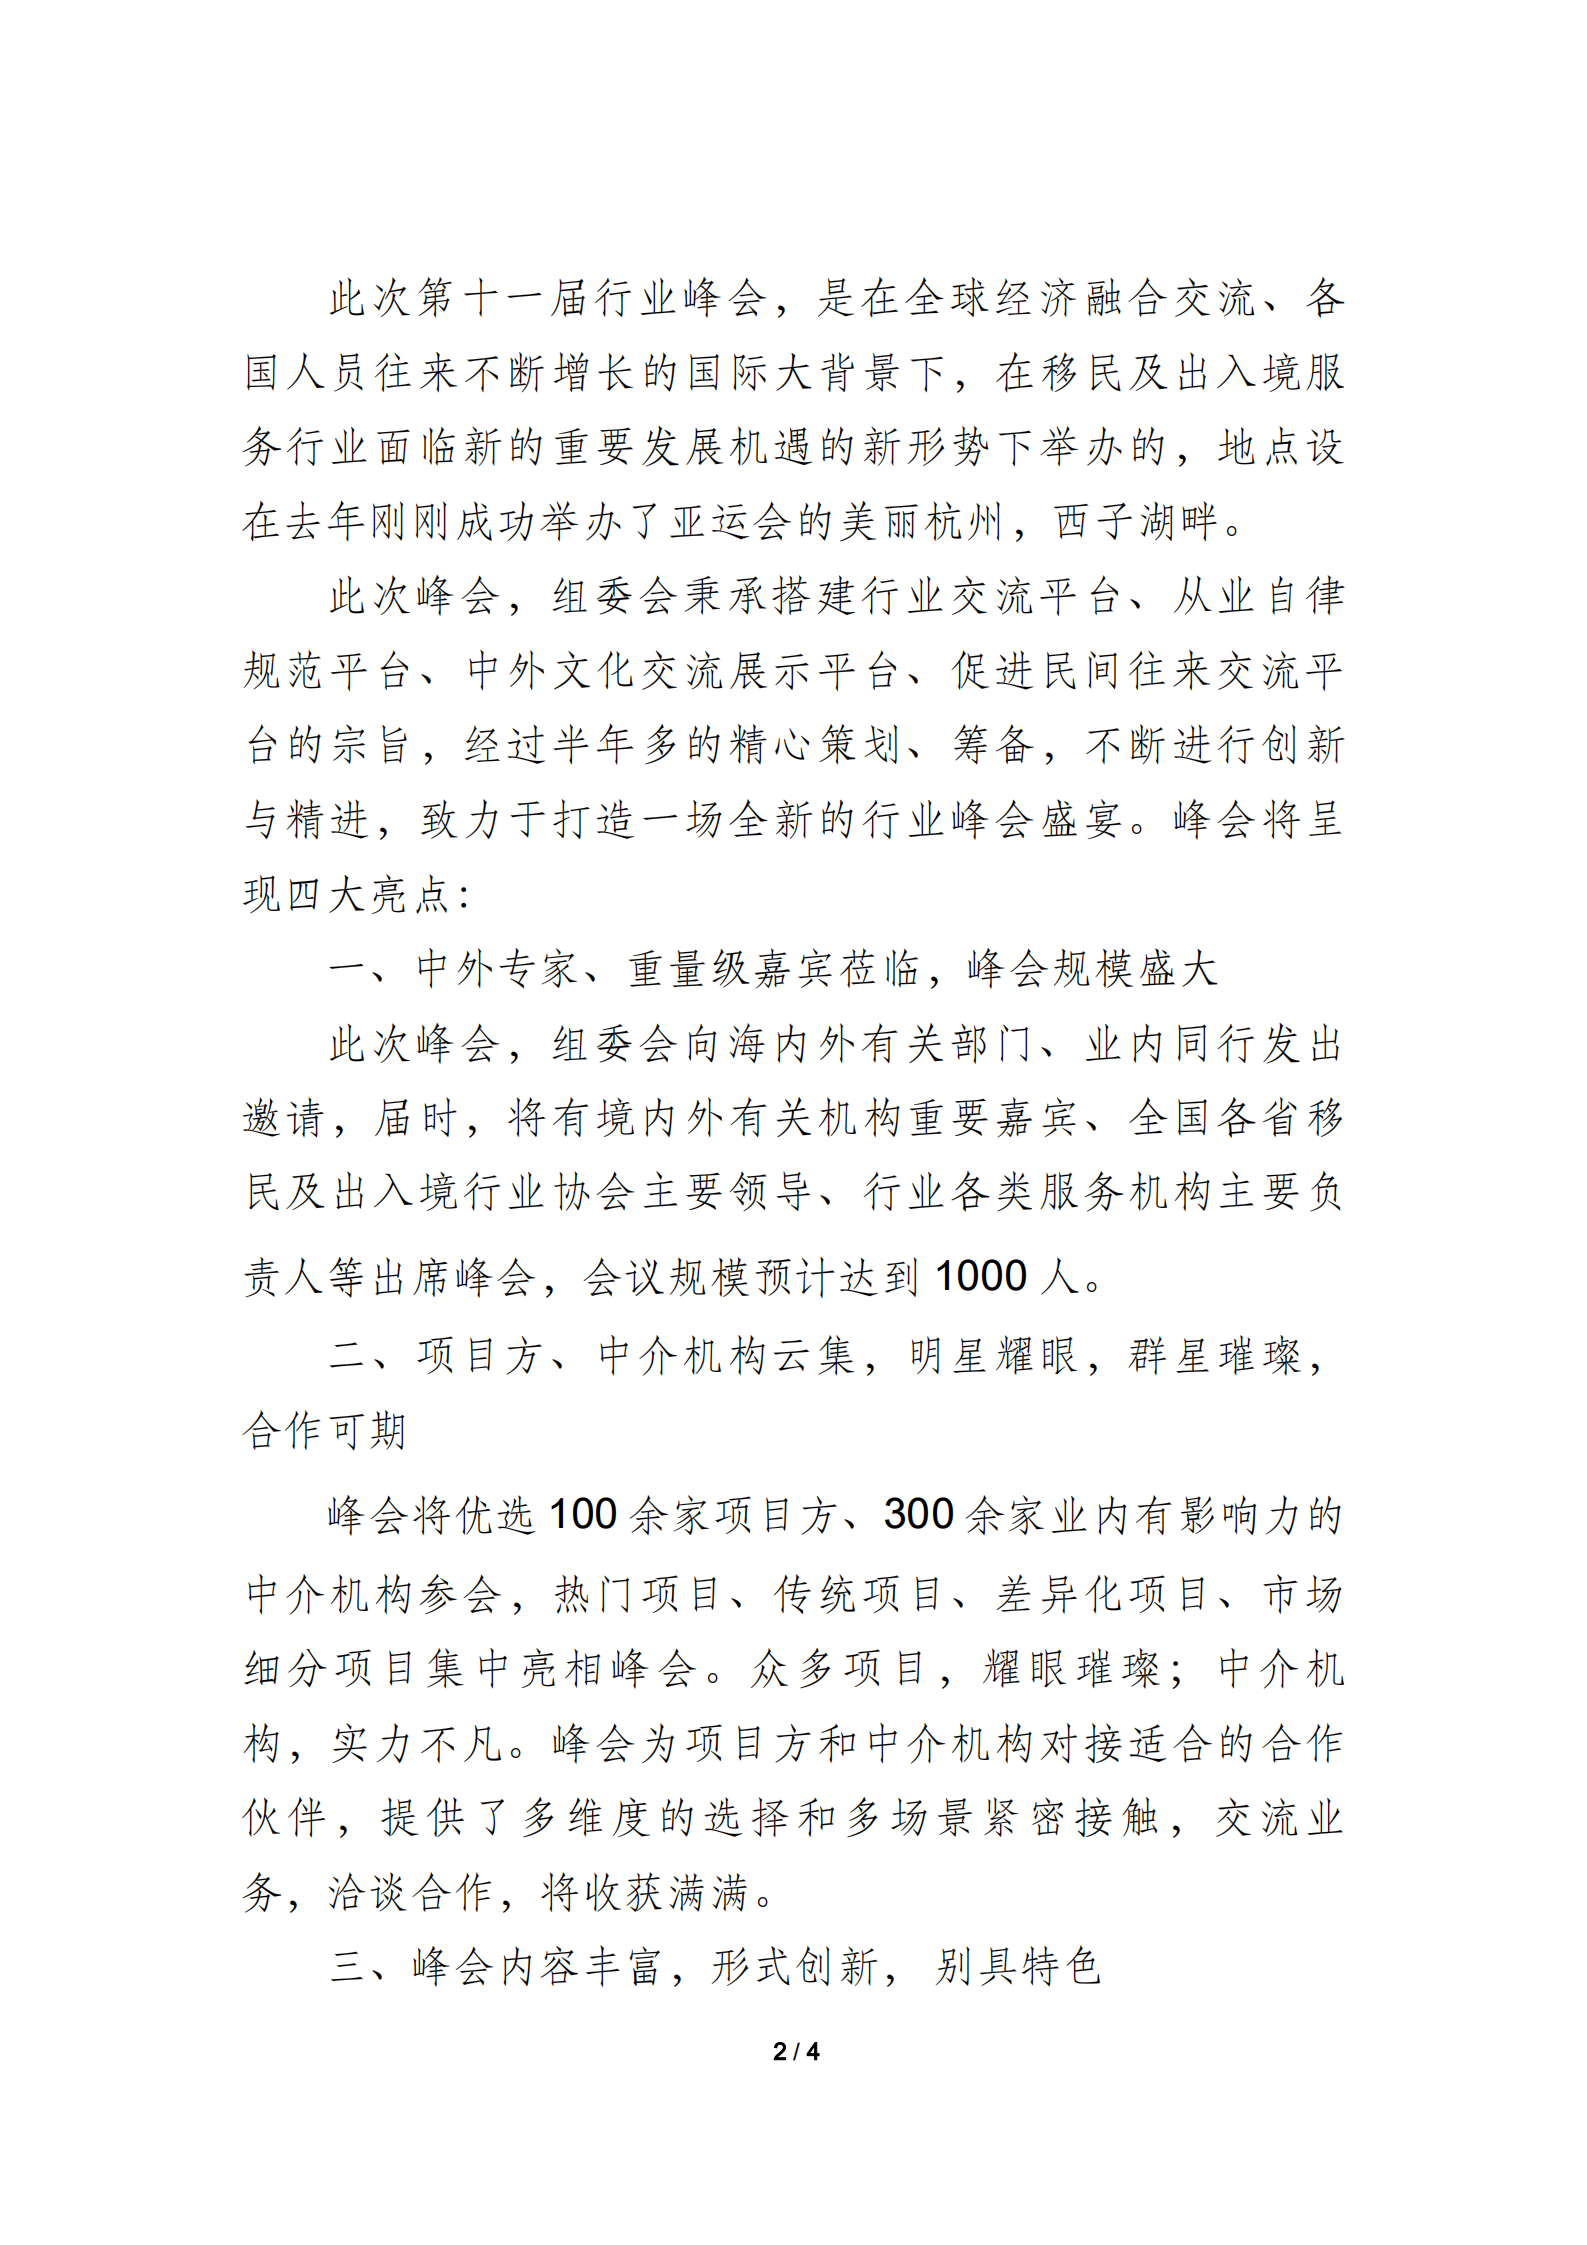 （中文）第十一届国际移民及出入境高峰论坛邀请函（宫总）_01.png